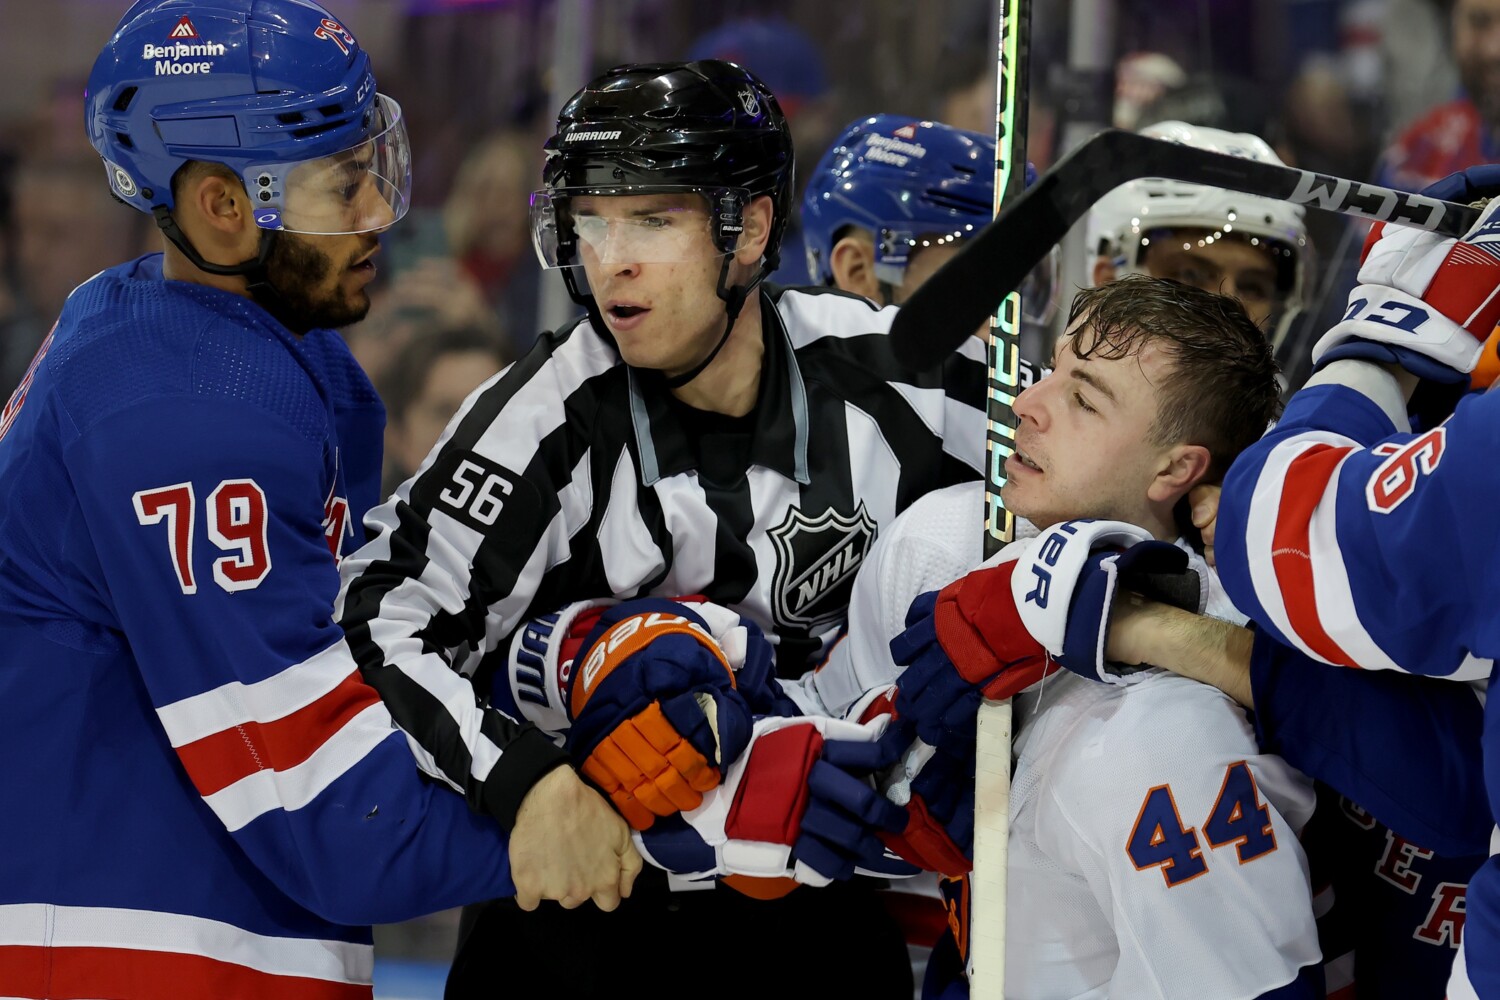 New York Rangers vs New Jersey Devils Hockey Rivalry